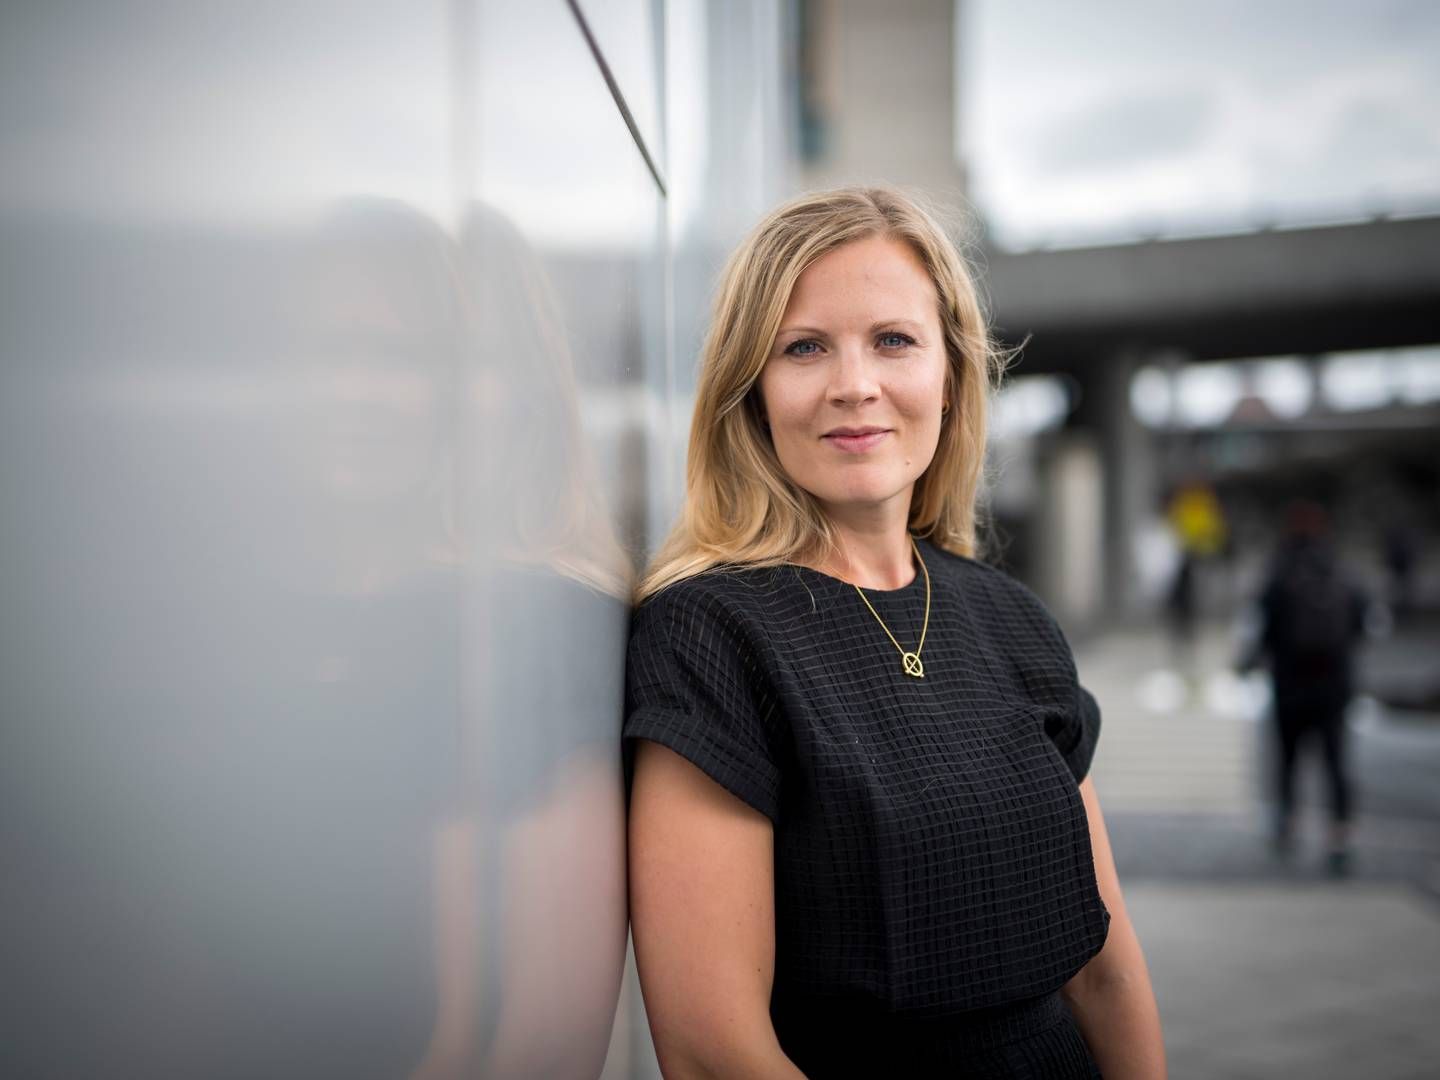 REGULERINGER: – Vi i KLP vil jobbe for at selskapene vi er investert i vil være konstruktive støttespillere i å utvikle og gjennomføre nye reguleringer, sier direktør for samfunnsansvar Heidi Finskas i KLP.